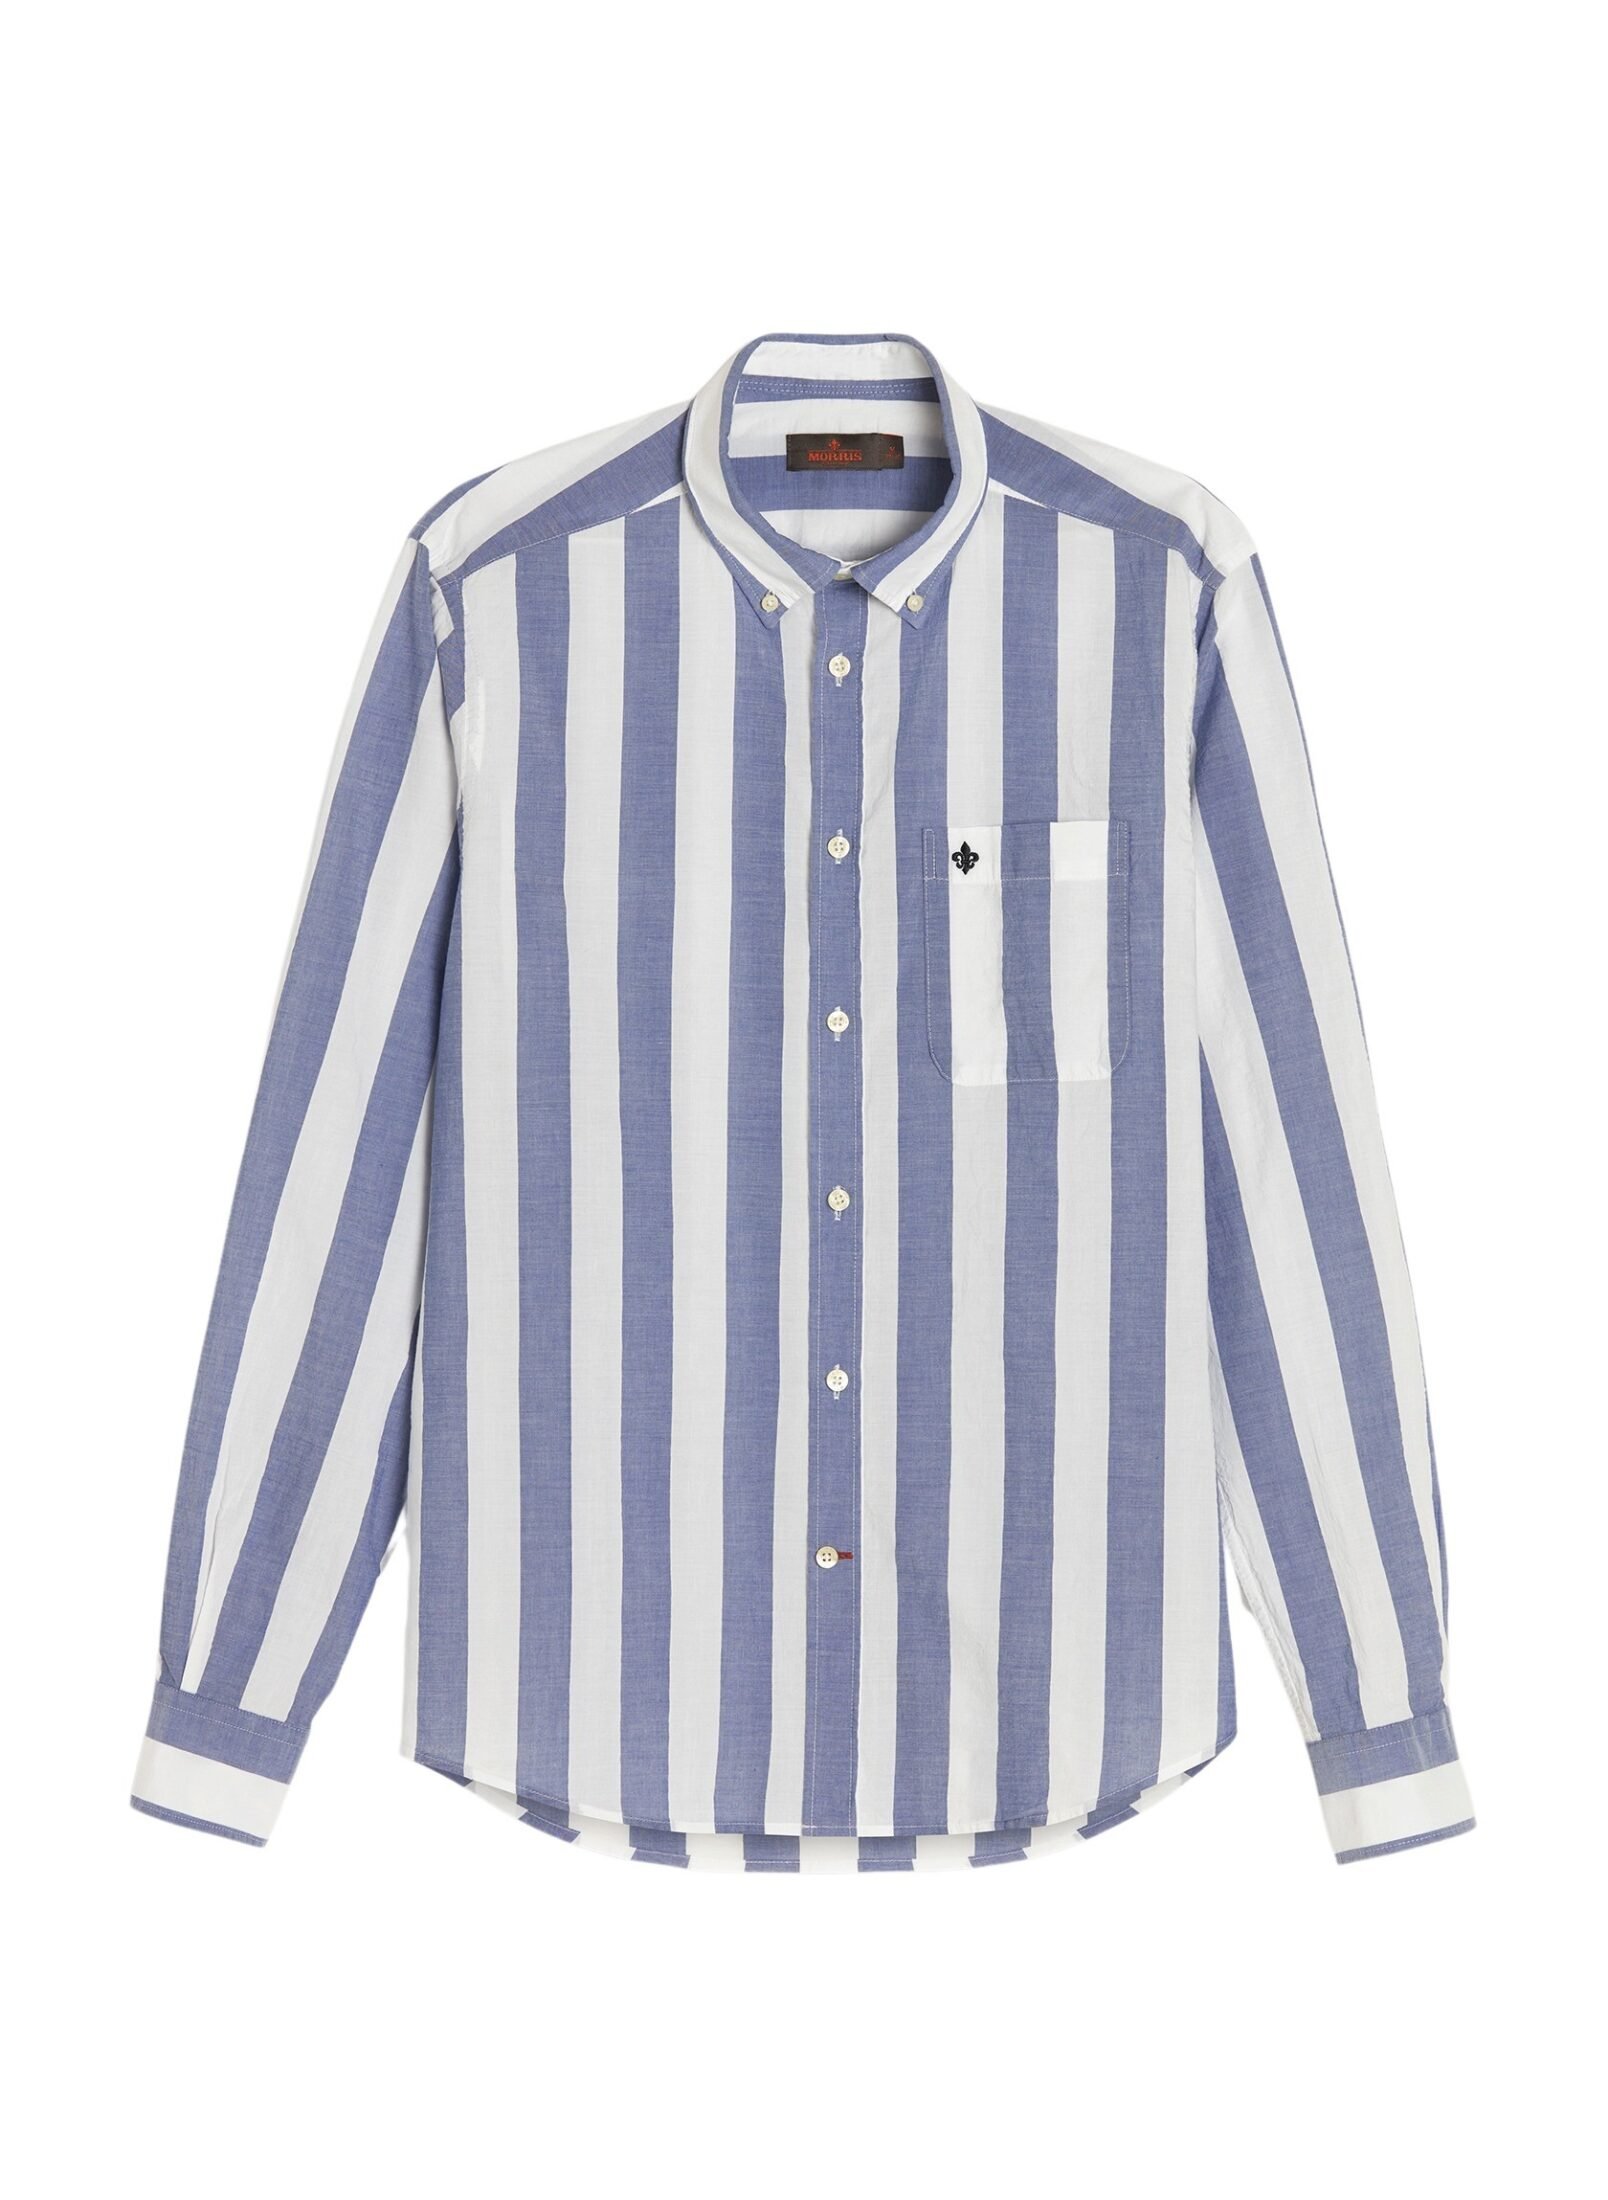 801613-block-stripe-bd-shirt-60-navy-1